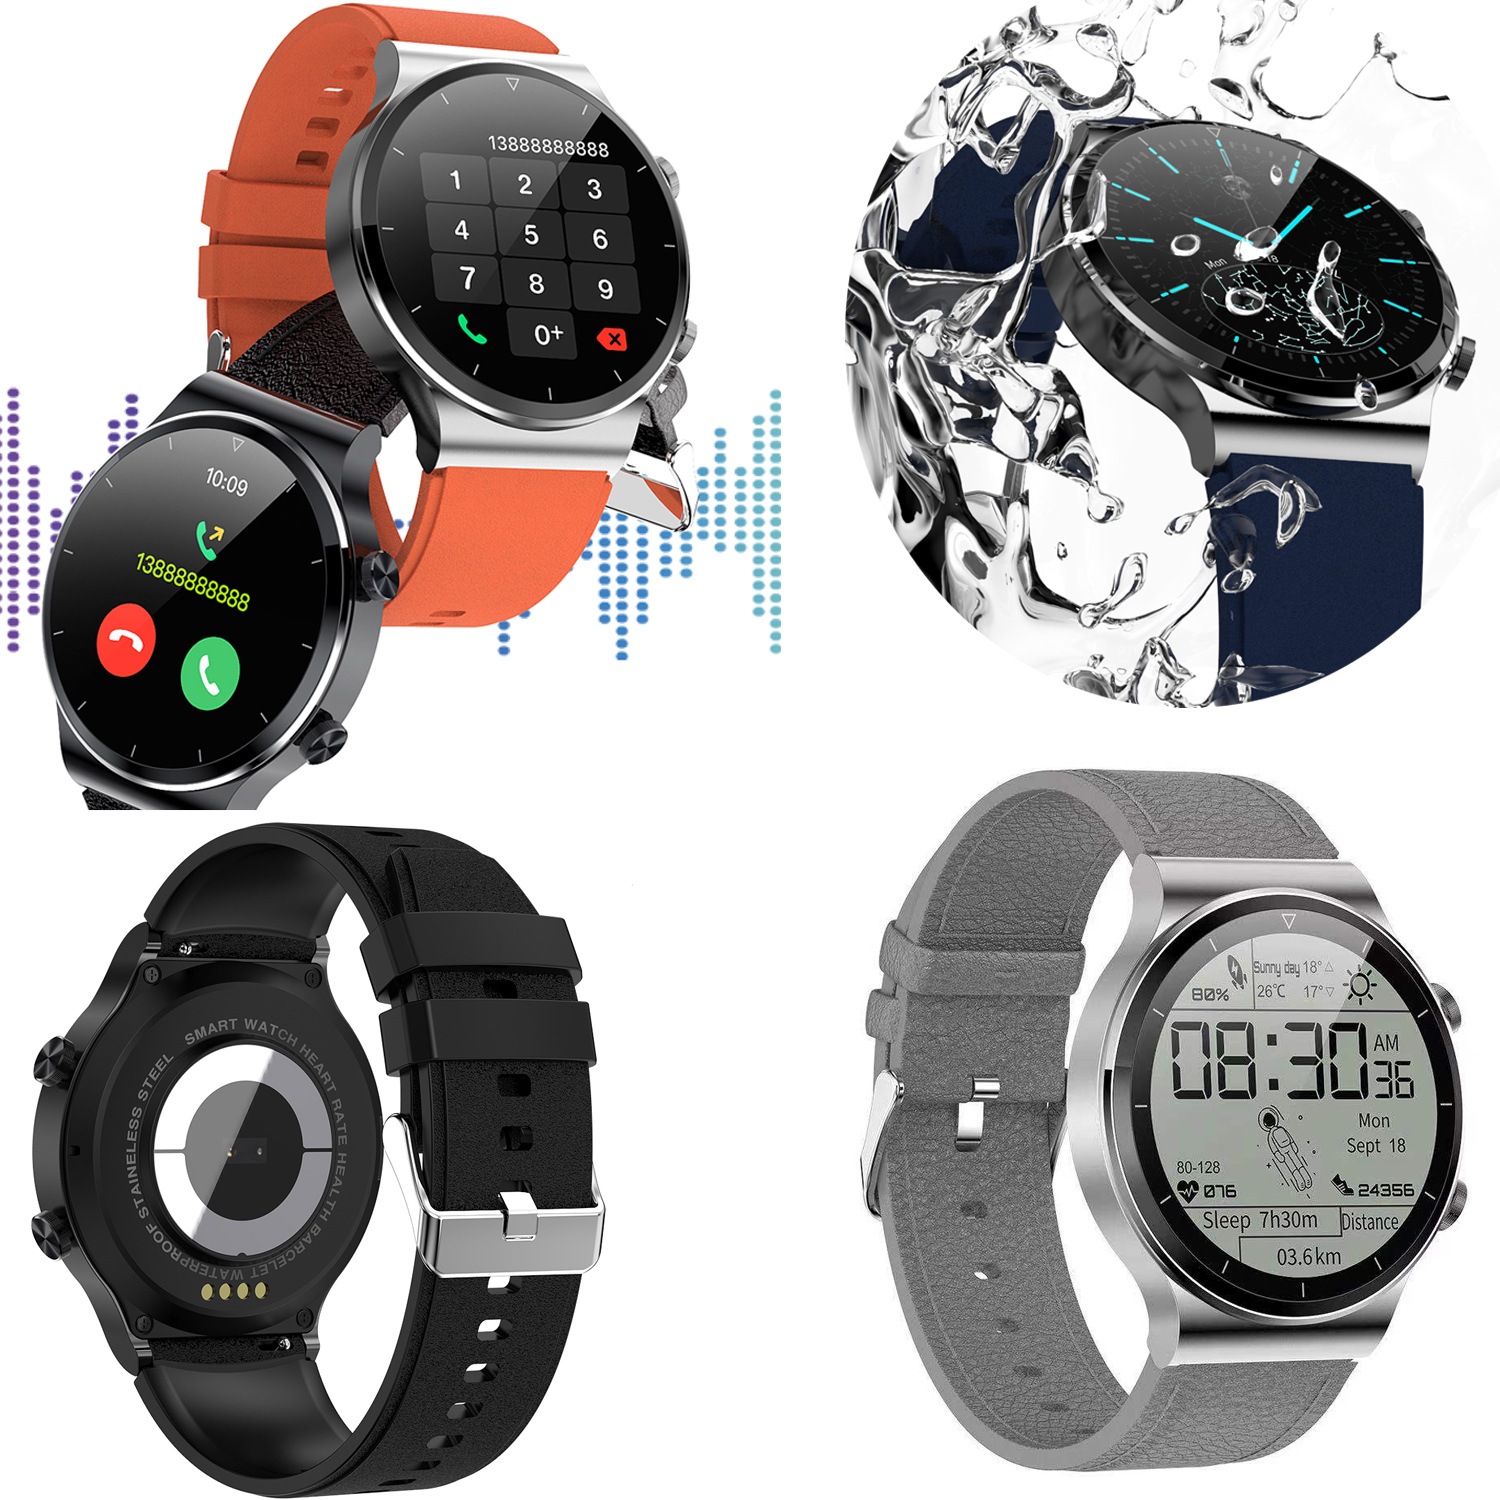 Touch Screen BT Call Heart Rate Monitor Sport Smart Watch G51